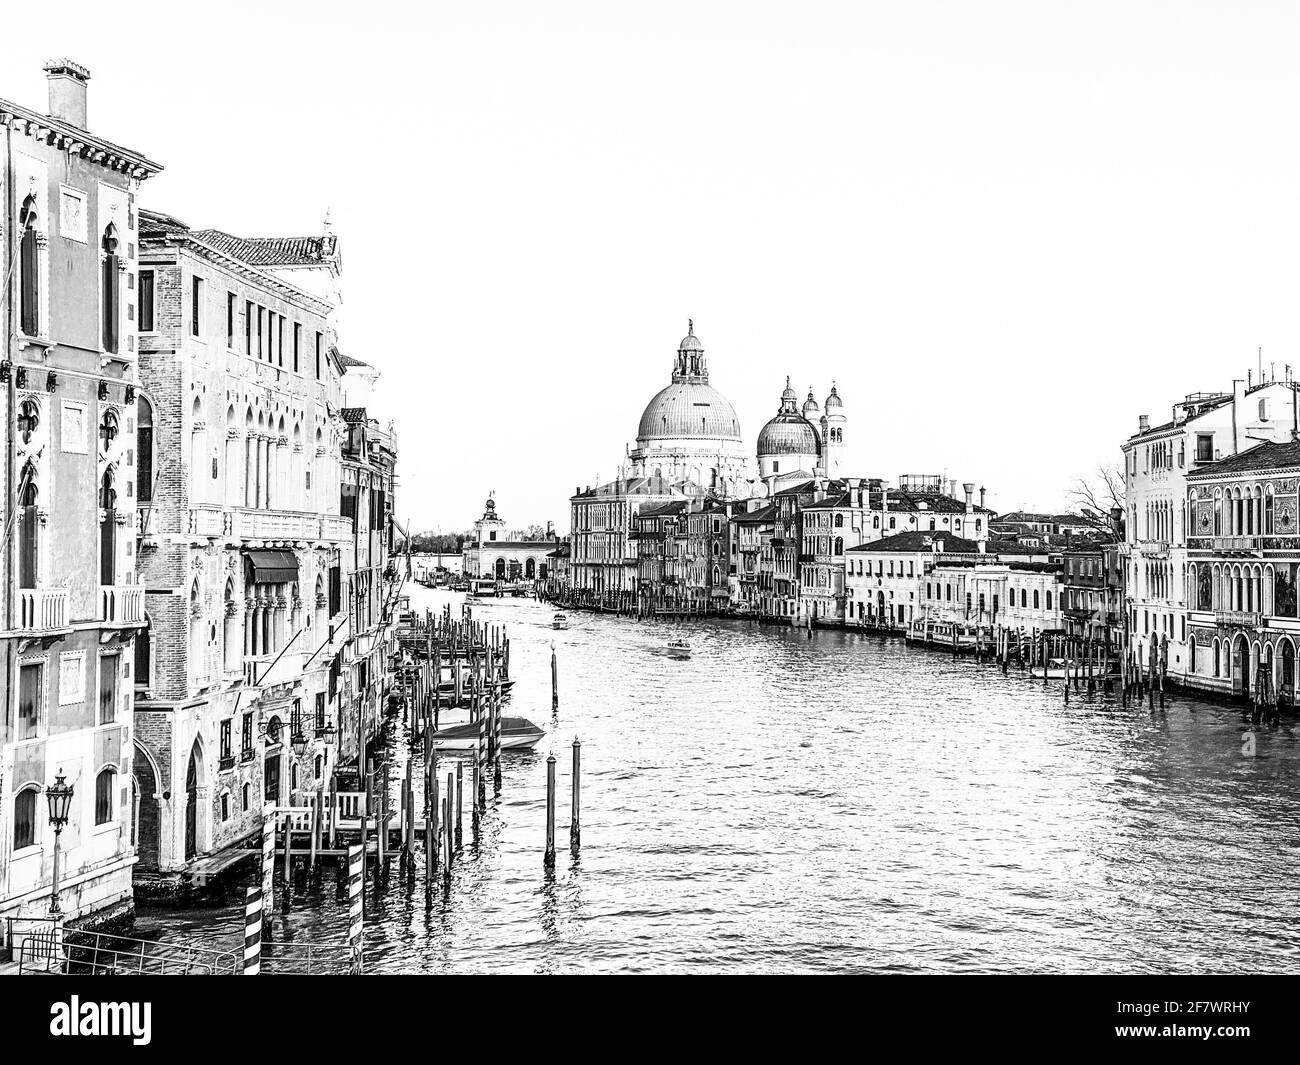 Vue sur le Grand Canal et la basilique Santa Maria della Salute depuis le Ponte dell'Accademia à Venise, Italie Banque D'Images